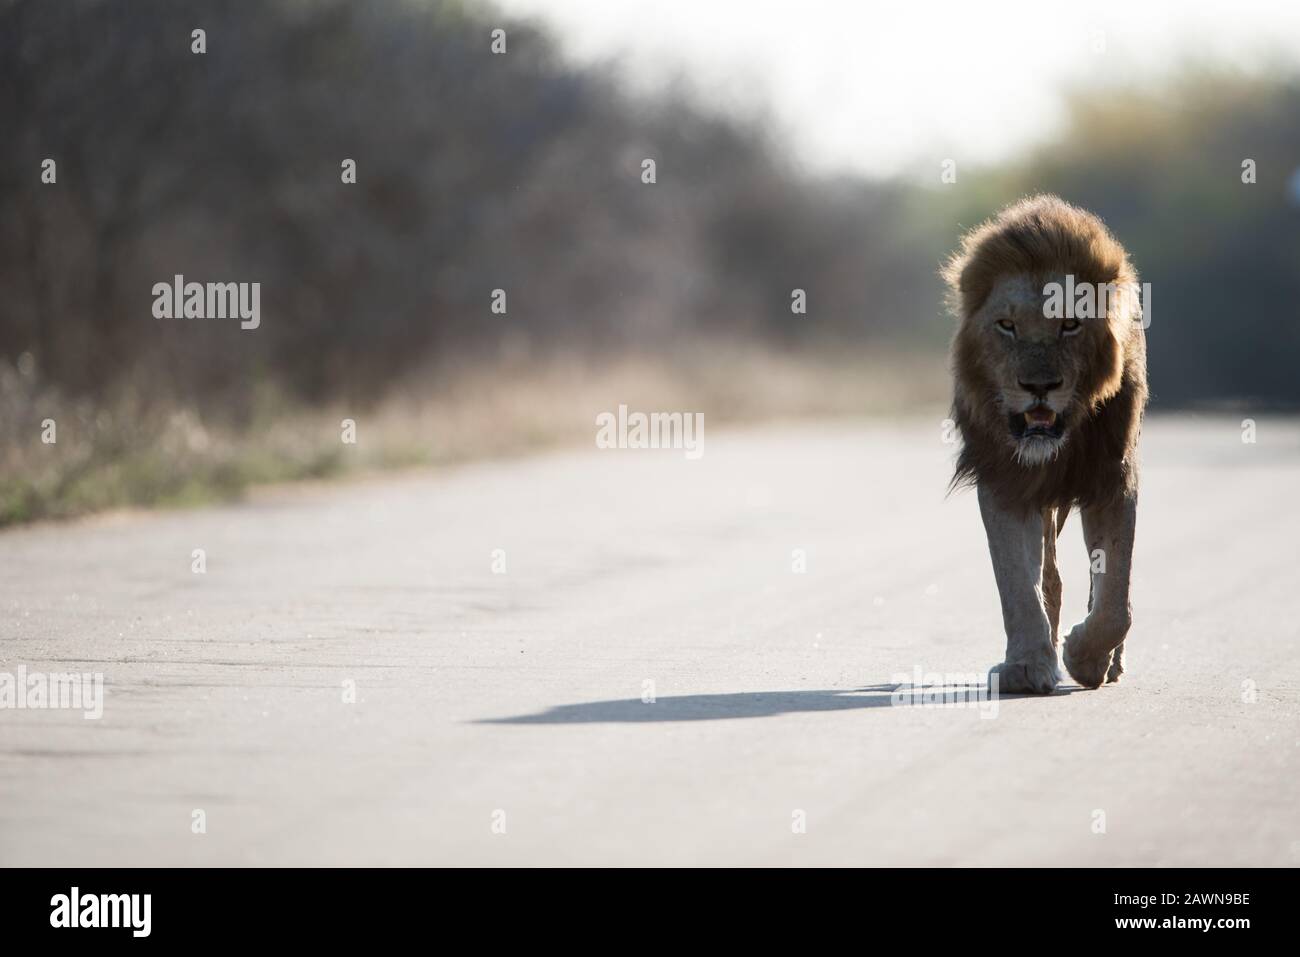 Belle photo d'un lion mâle marchant sur la route avec un arrière-plan flou Banque D'Images